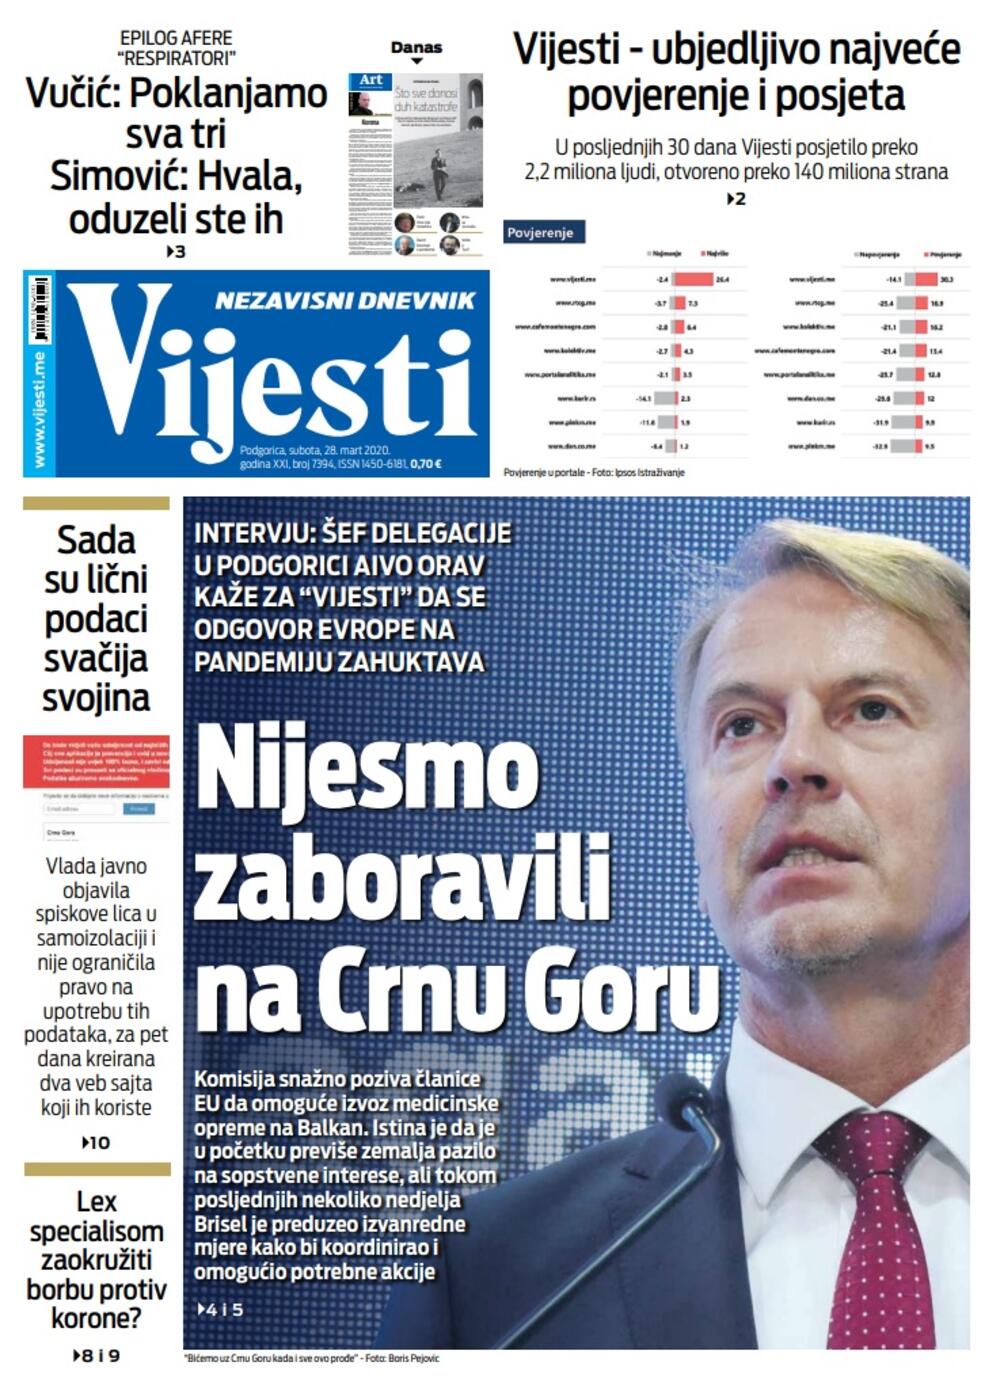 Naslovna strana "Vijesti" za 28. mart 2020. godine, Foto: Vijesti